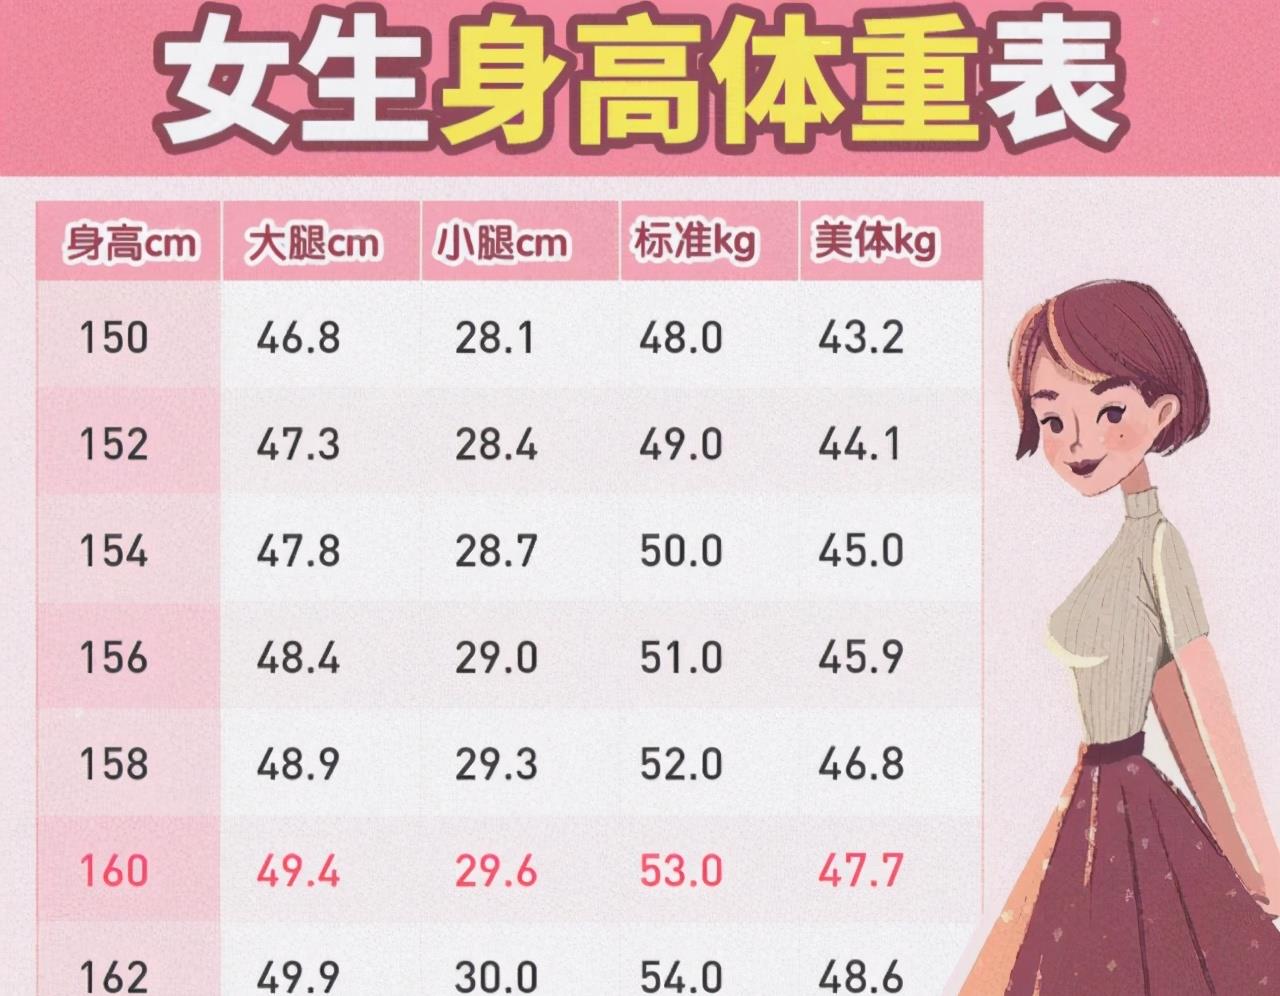 原创155-165cm女生的体重对照表更新了,若你"超标"了,别放纵自己